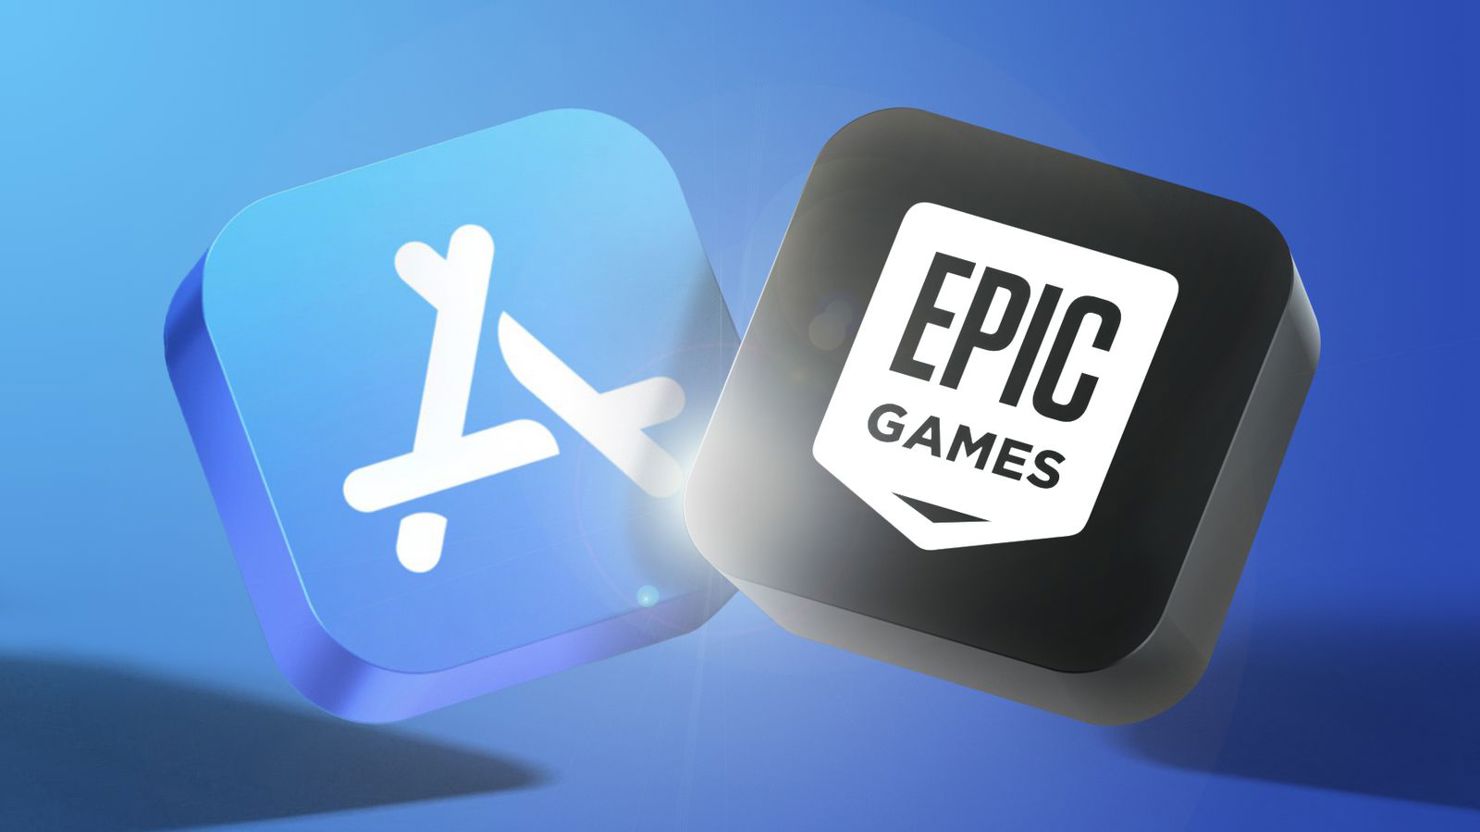 Tòa án Tối cao Mỹ hôm 16/1 đã từ chối đơn khiếu nại chống độc quyền của Epic Games và đơn kháng cáo của Apple.